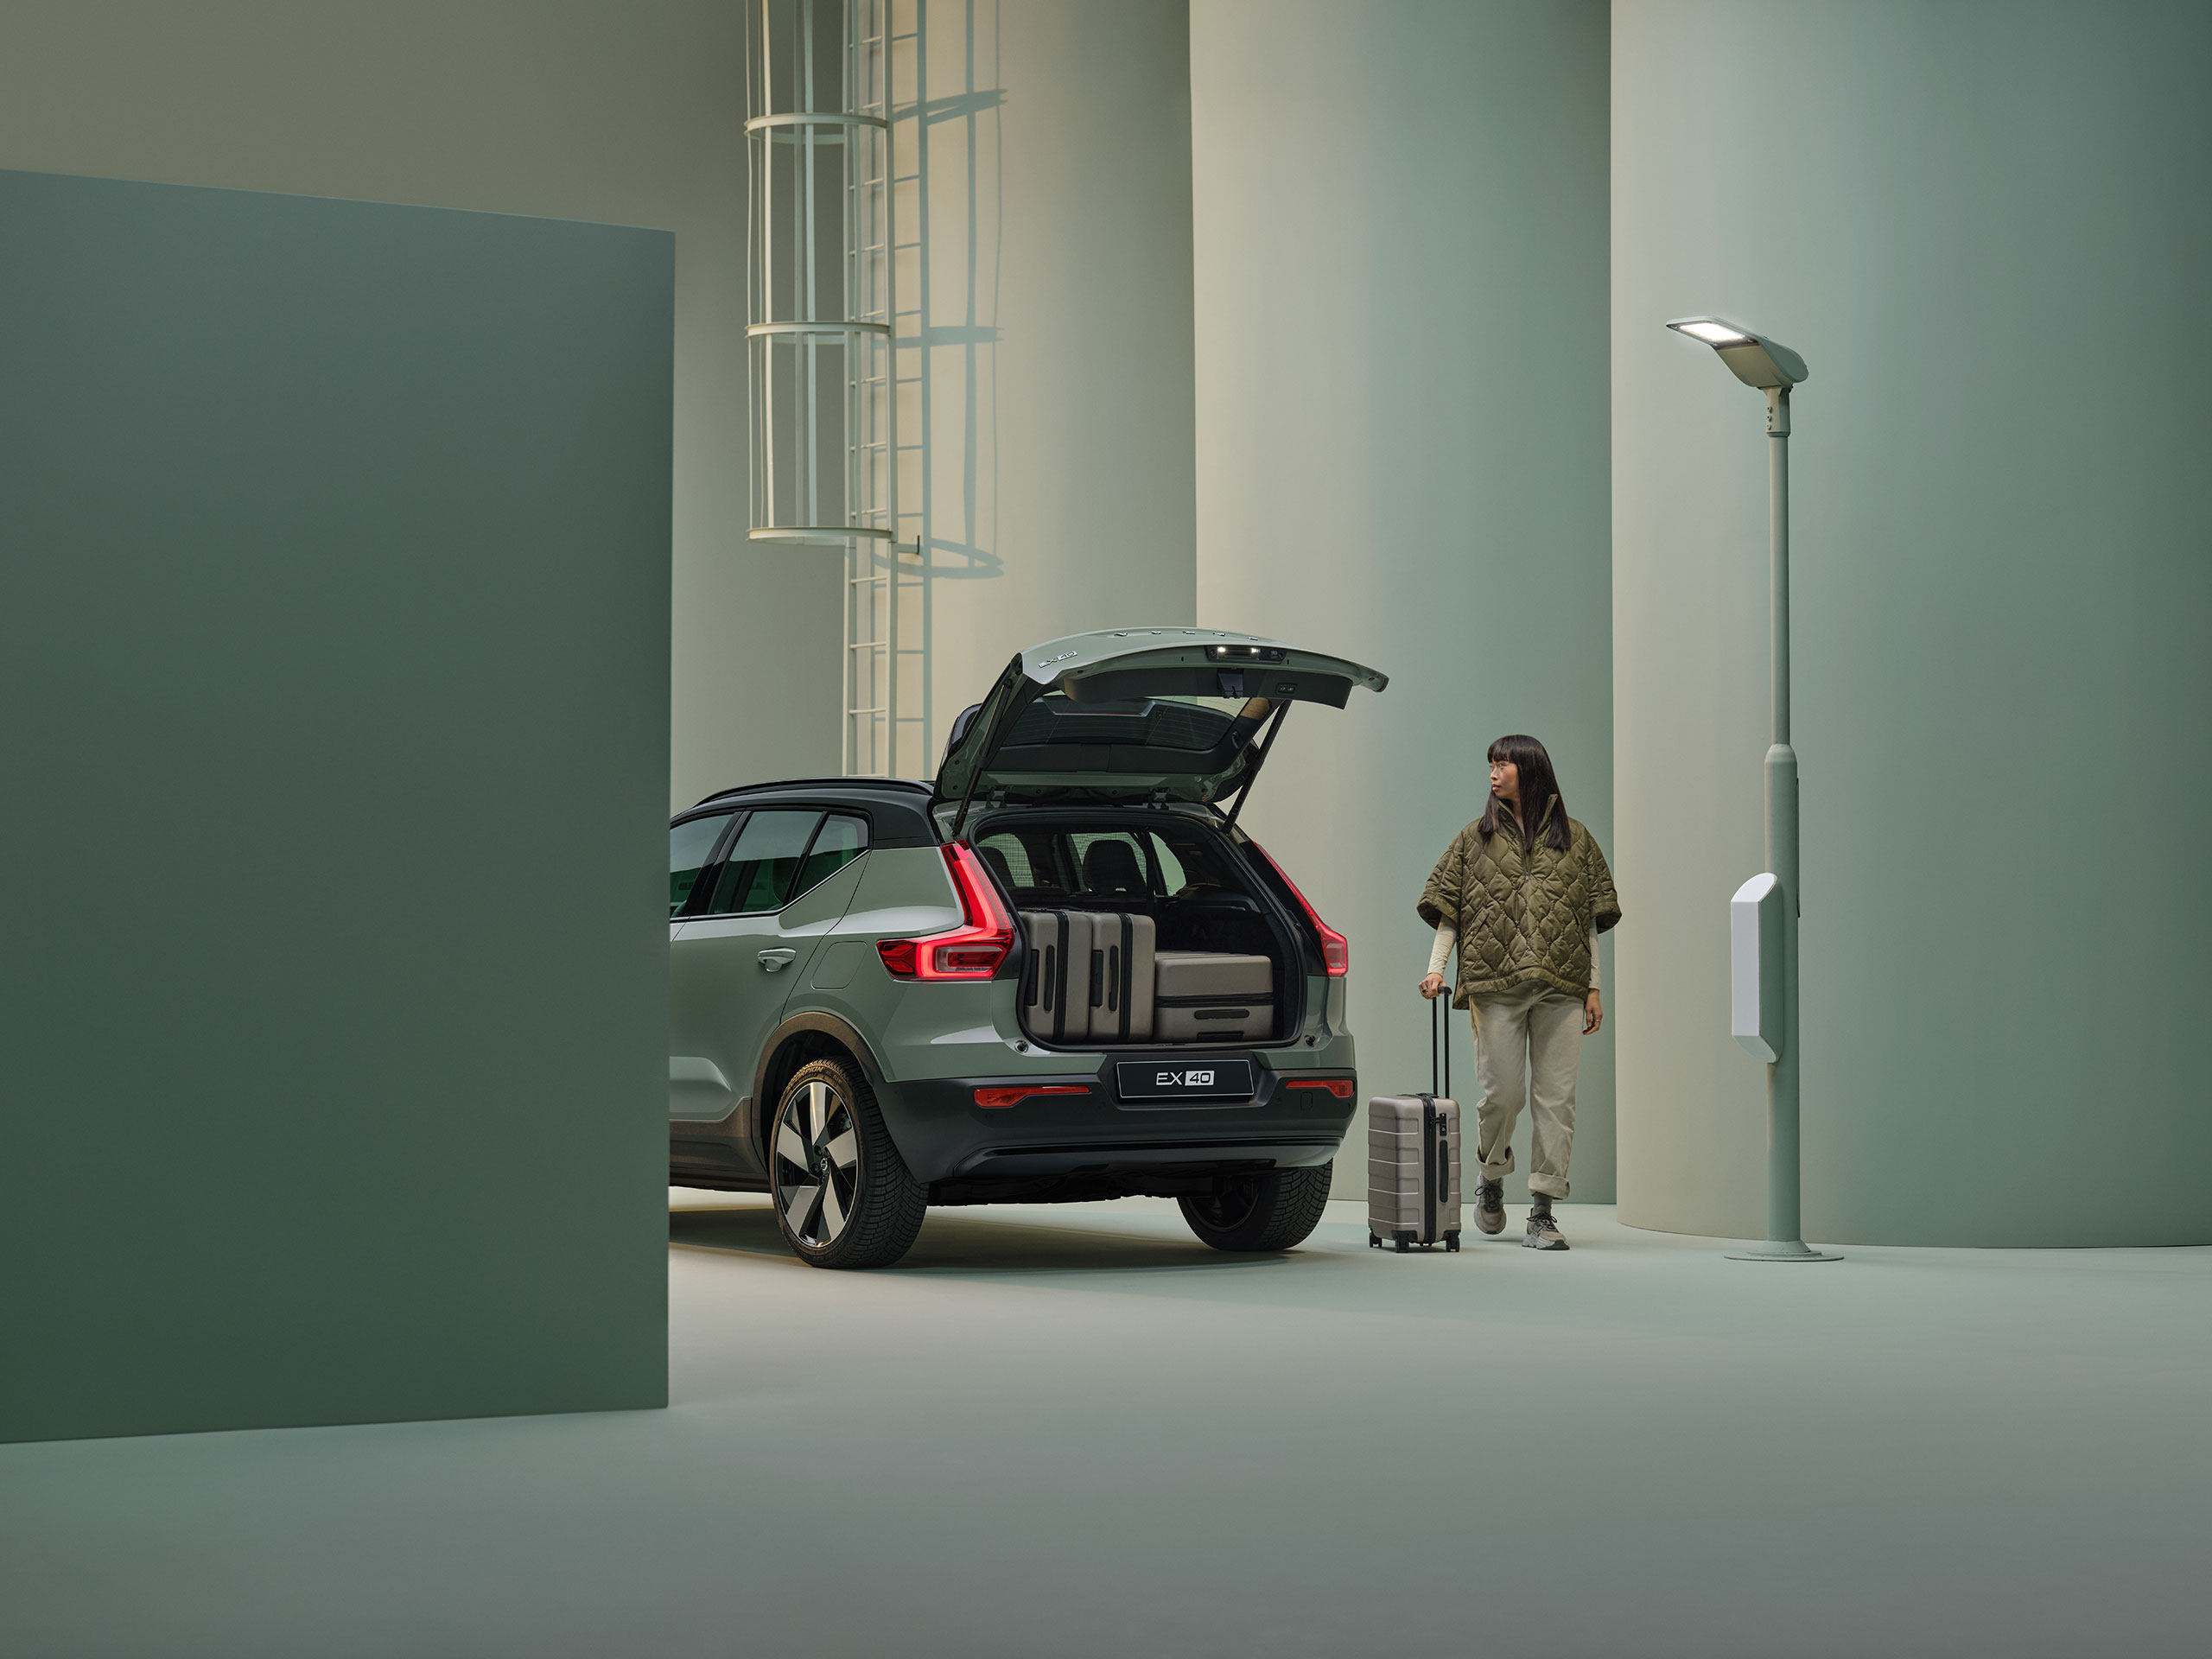 Volvo EX40 цвета Sage Green с открытой задней дверью и чемоданами внутри.